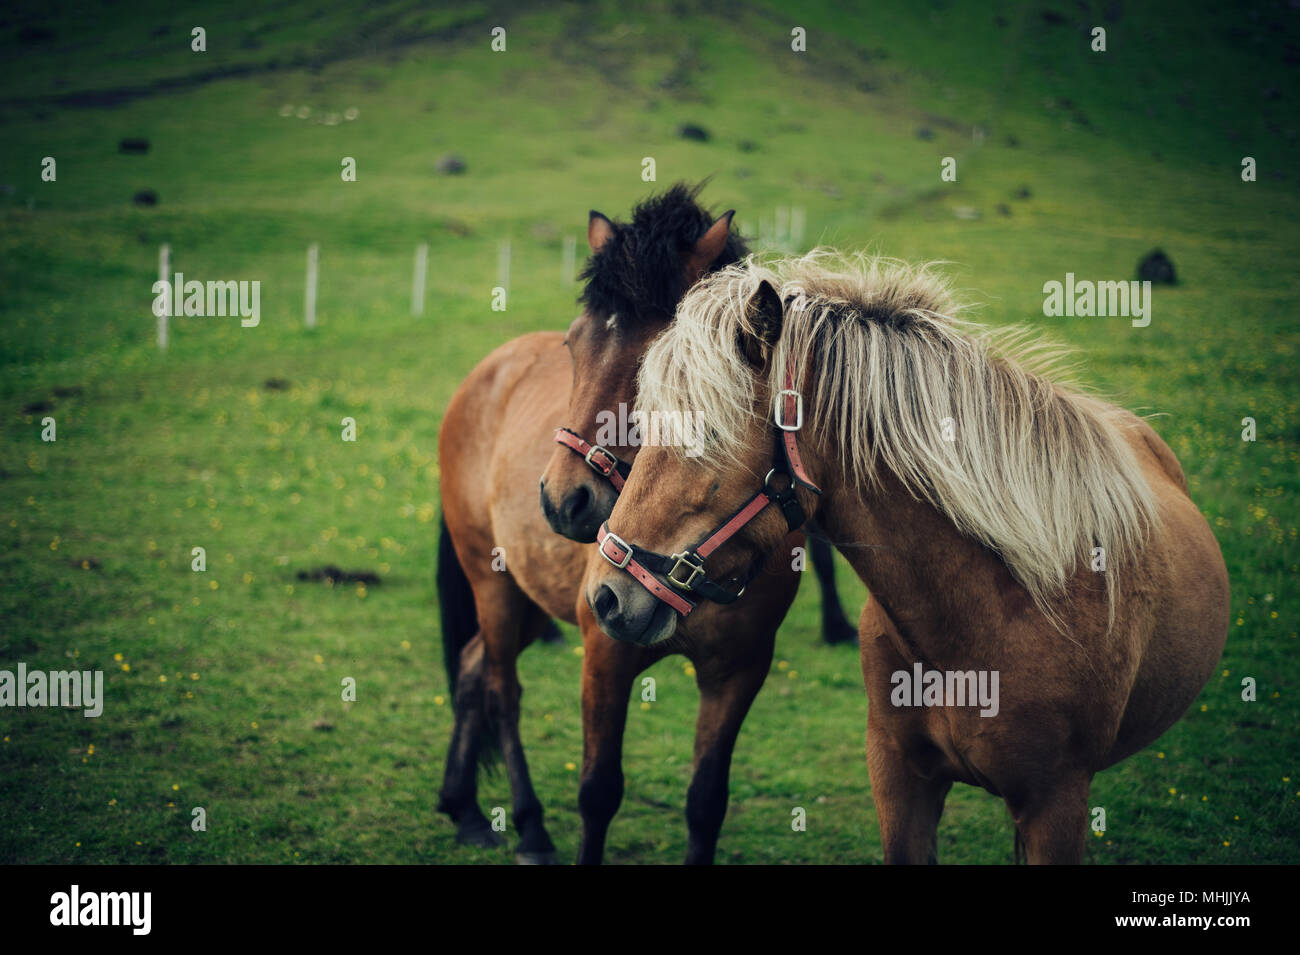 Chevaux Islandais. Le cheval islandais est une race chevaline développée en Islande. Banque D'Images